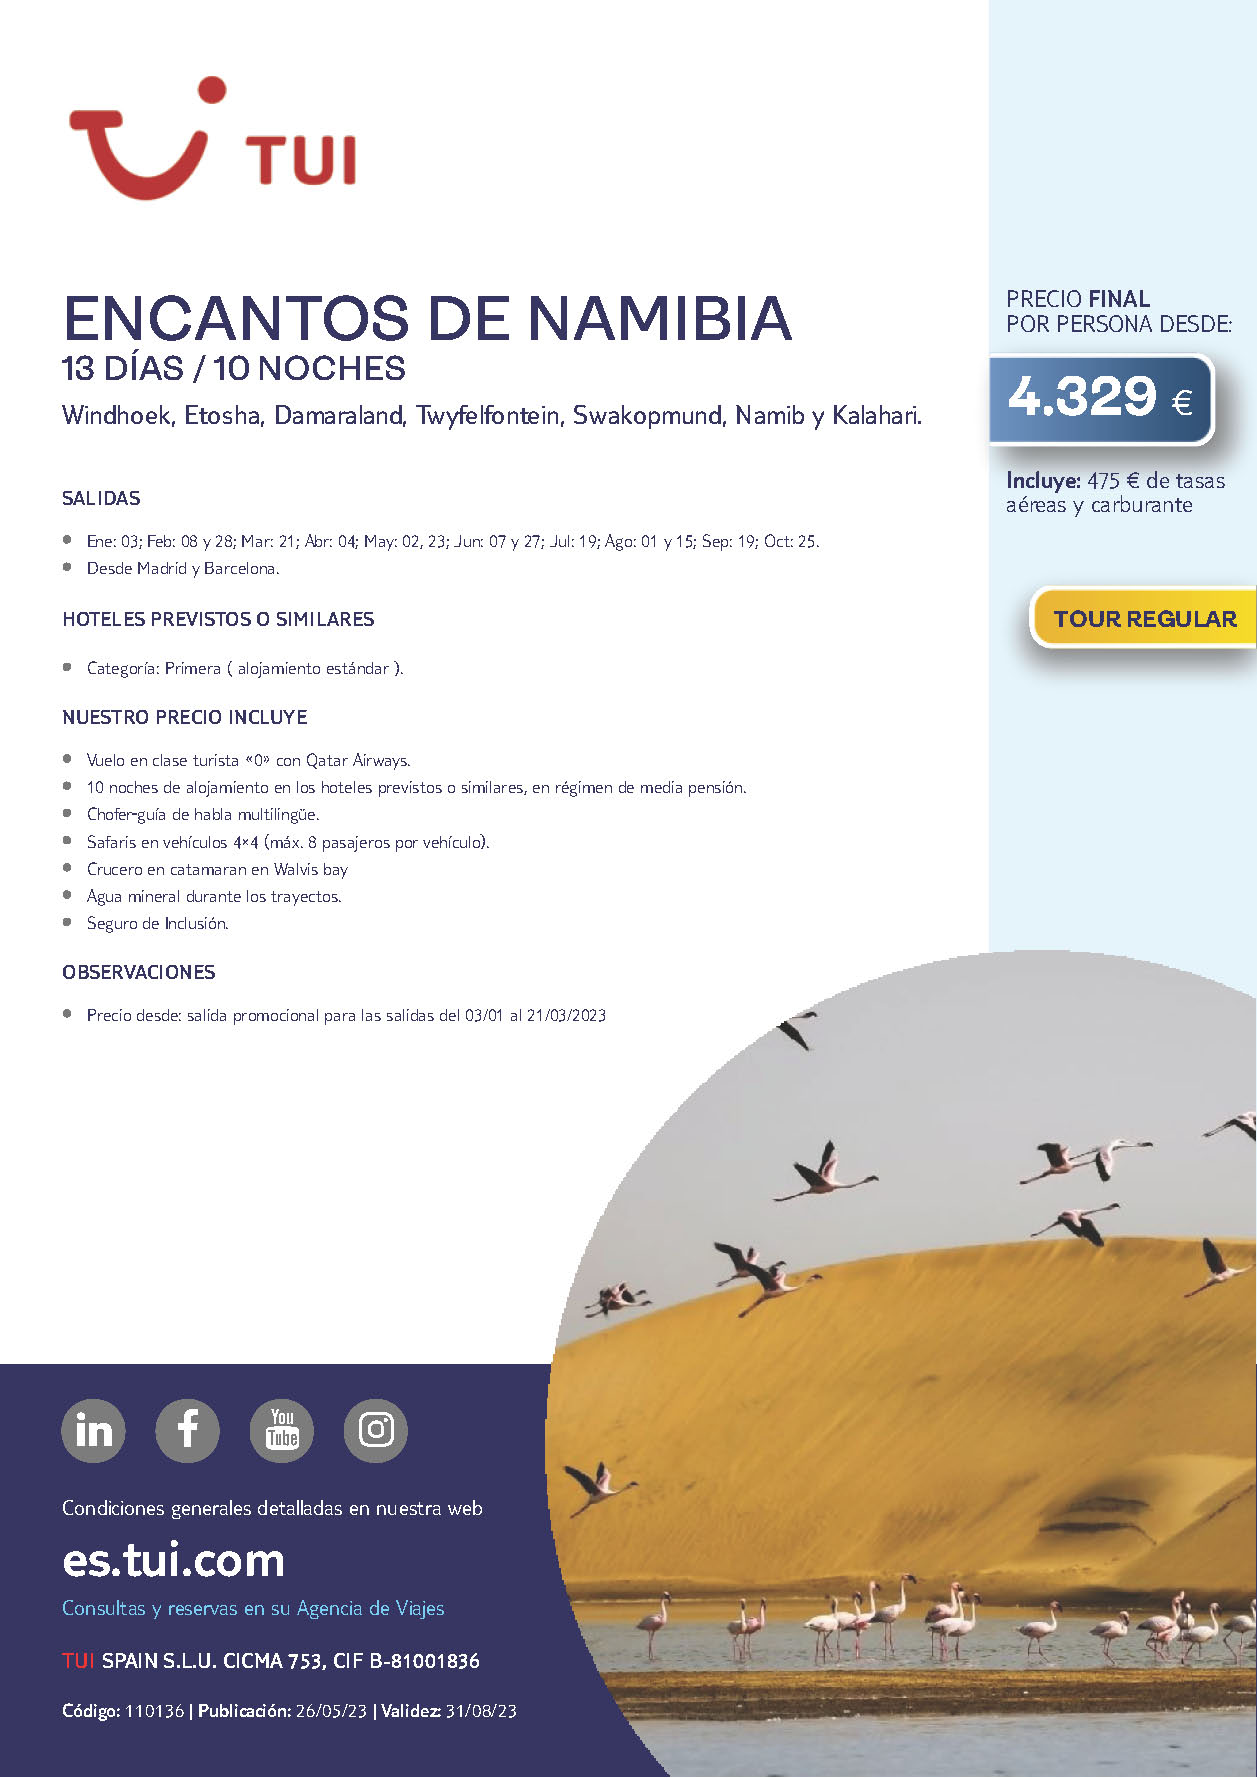 Oferta TUI circuito Encantos de Namibia 13 dias 10 noches Enero a Octubre 2023 salidas desde Barcelona y Madrid vuelos Qatar Airways